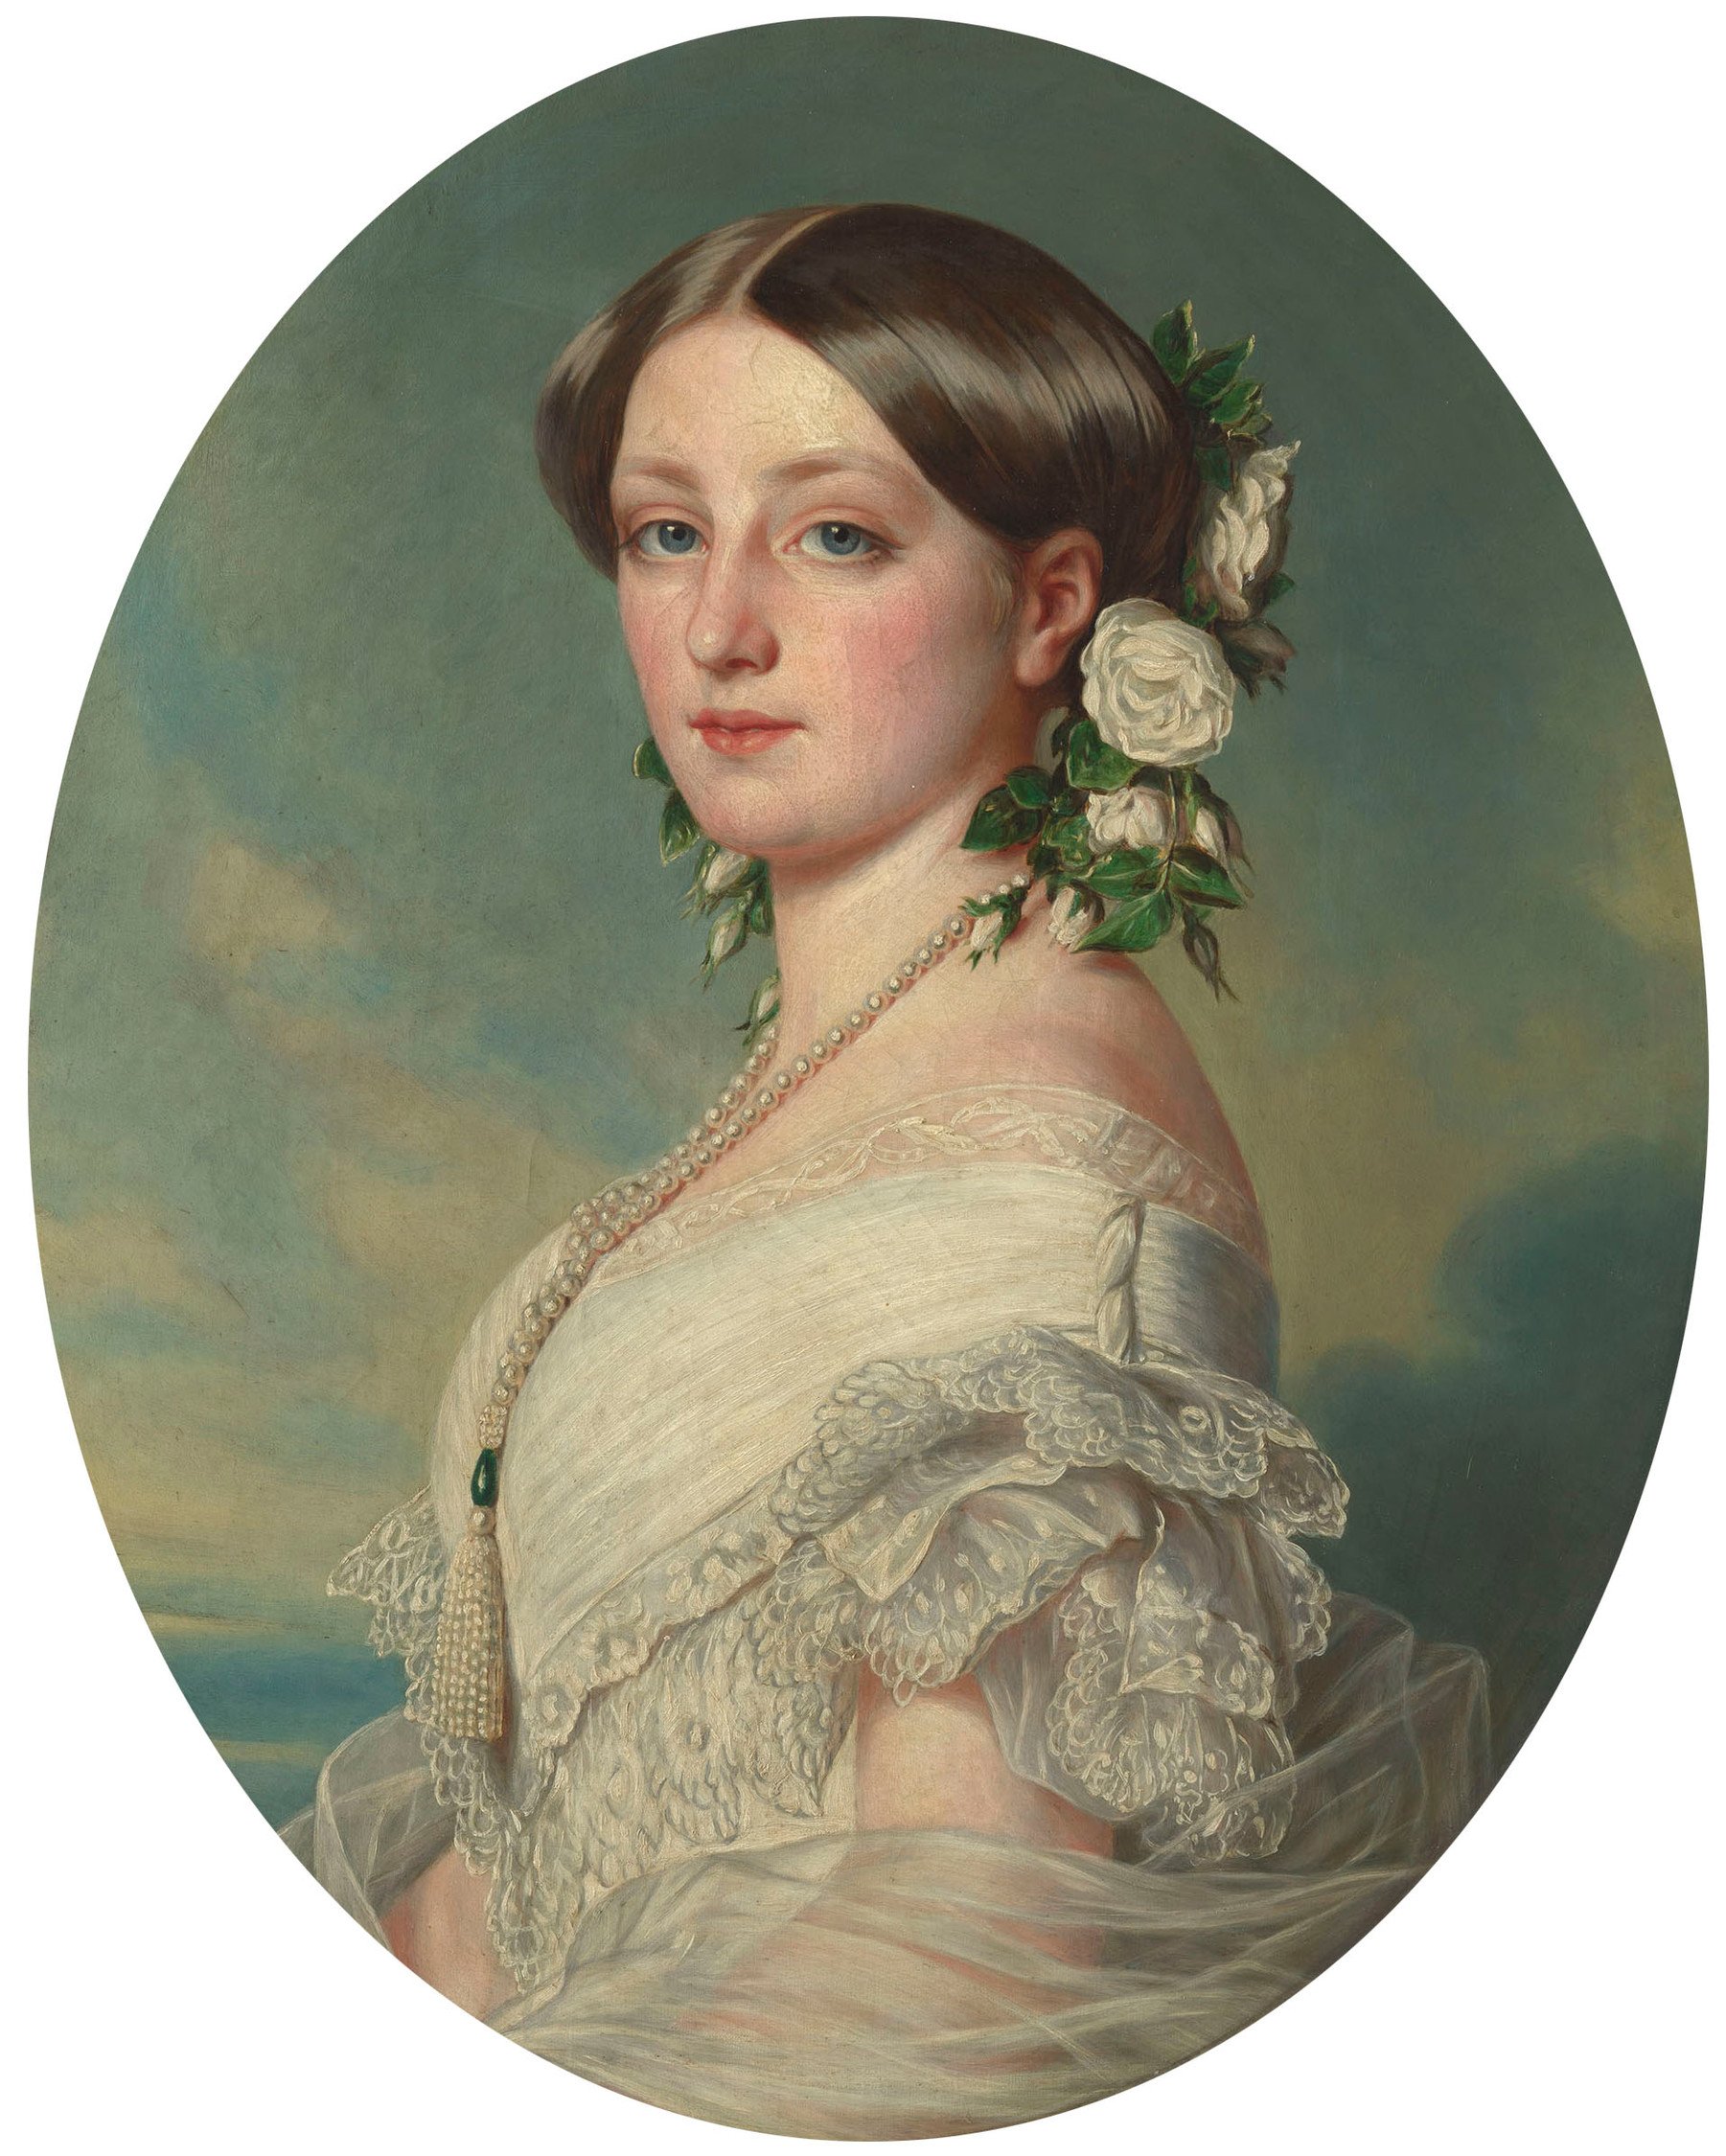 Das Bild zeigt ein Porträt von Marie Fürstin zu Leiningen von 1858, die die dargestellte Person auf der bisher unbekannten Zeichnung von Marie Ellenrieder sein könnte.